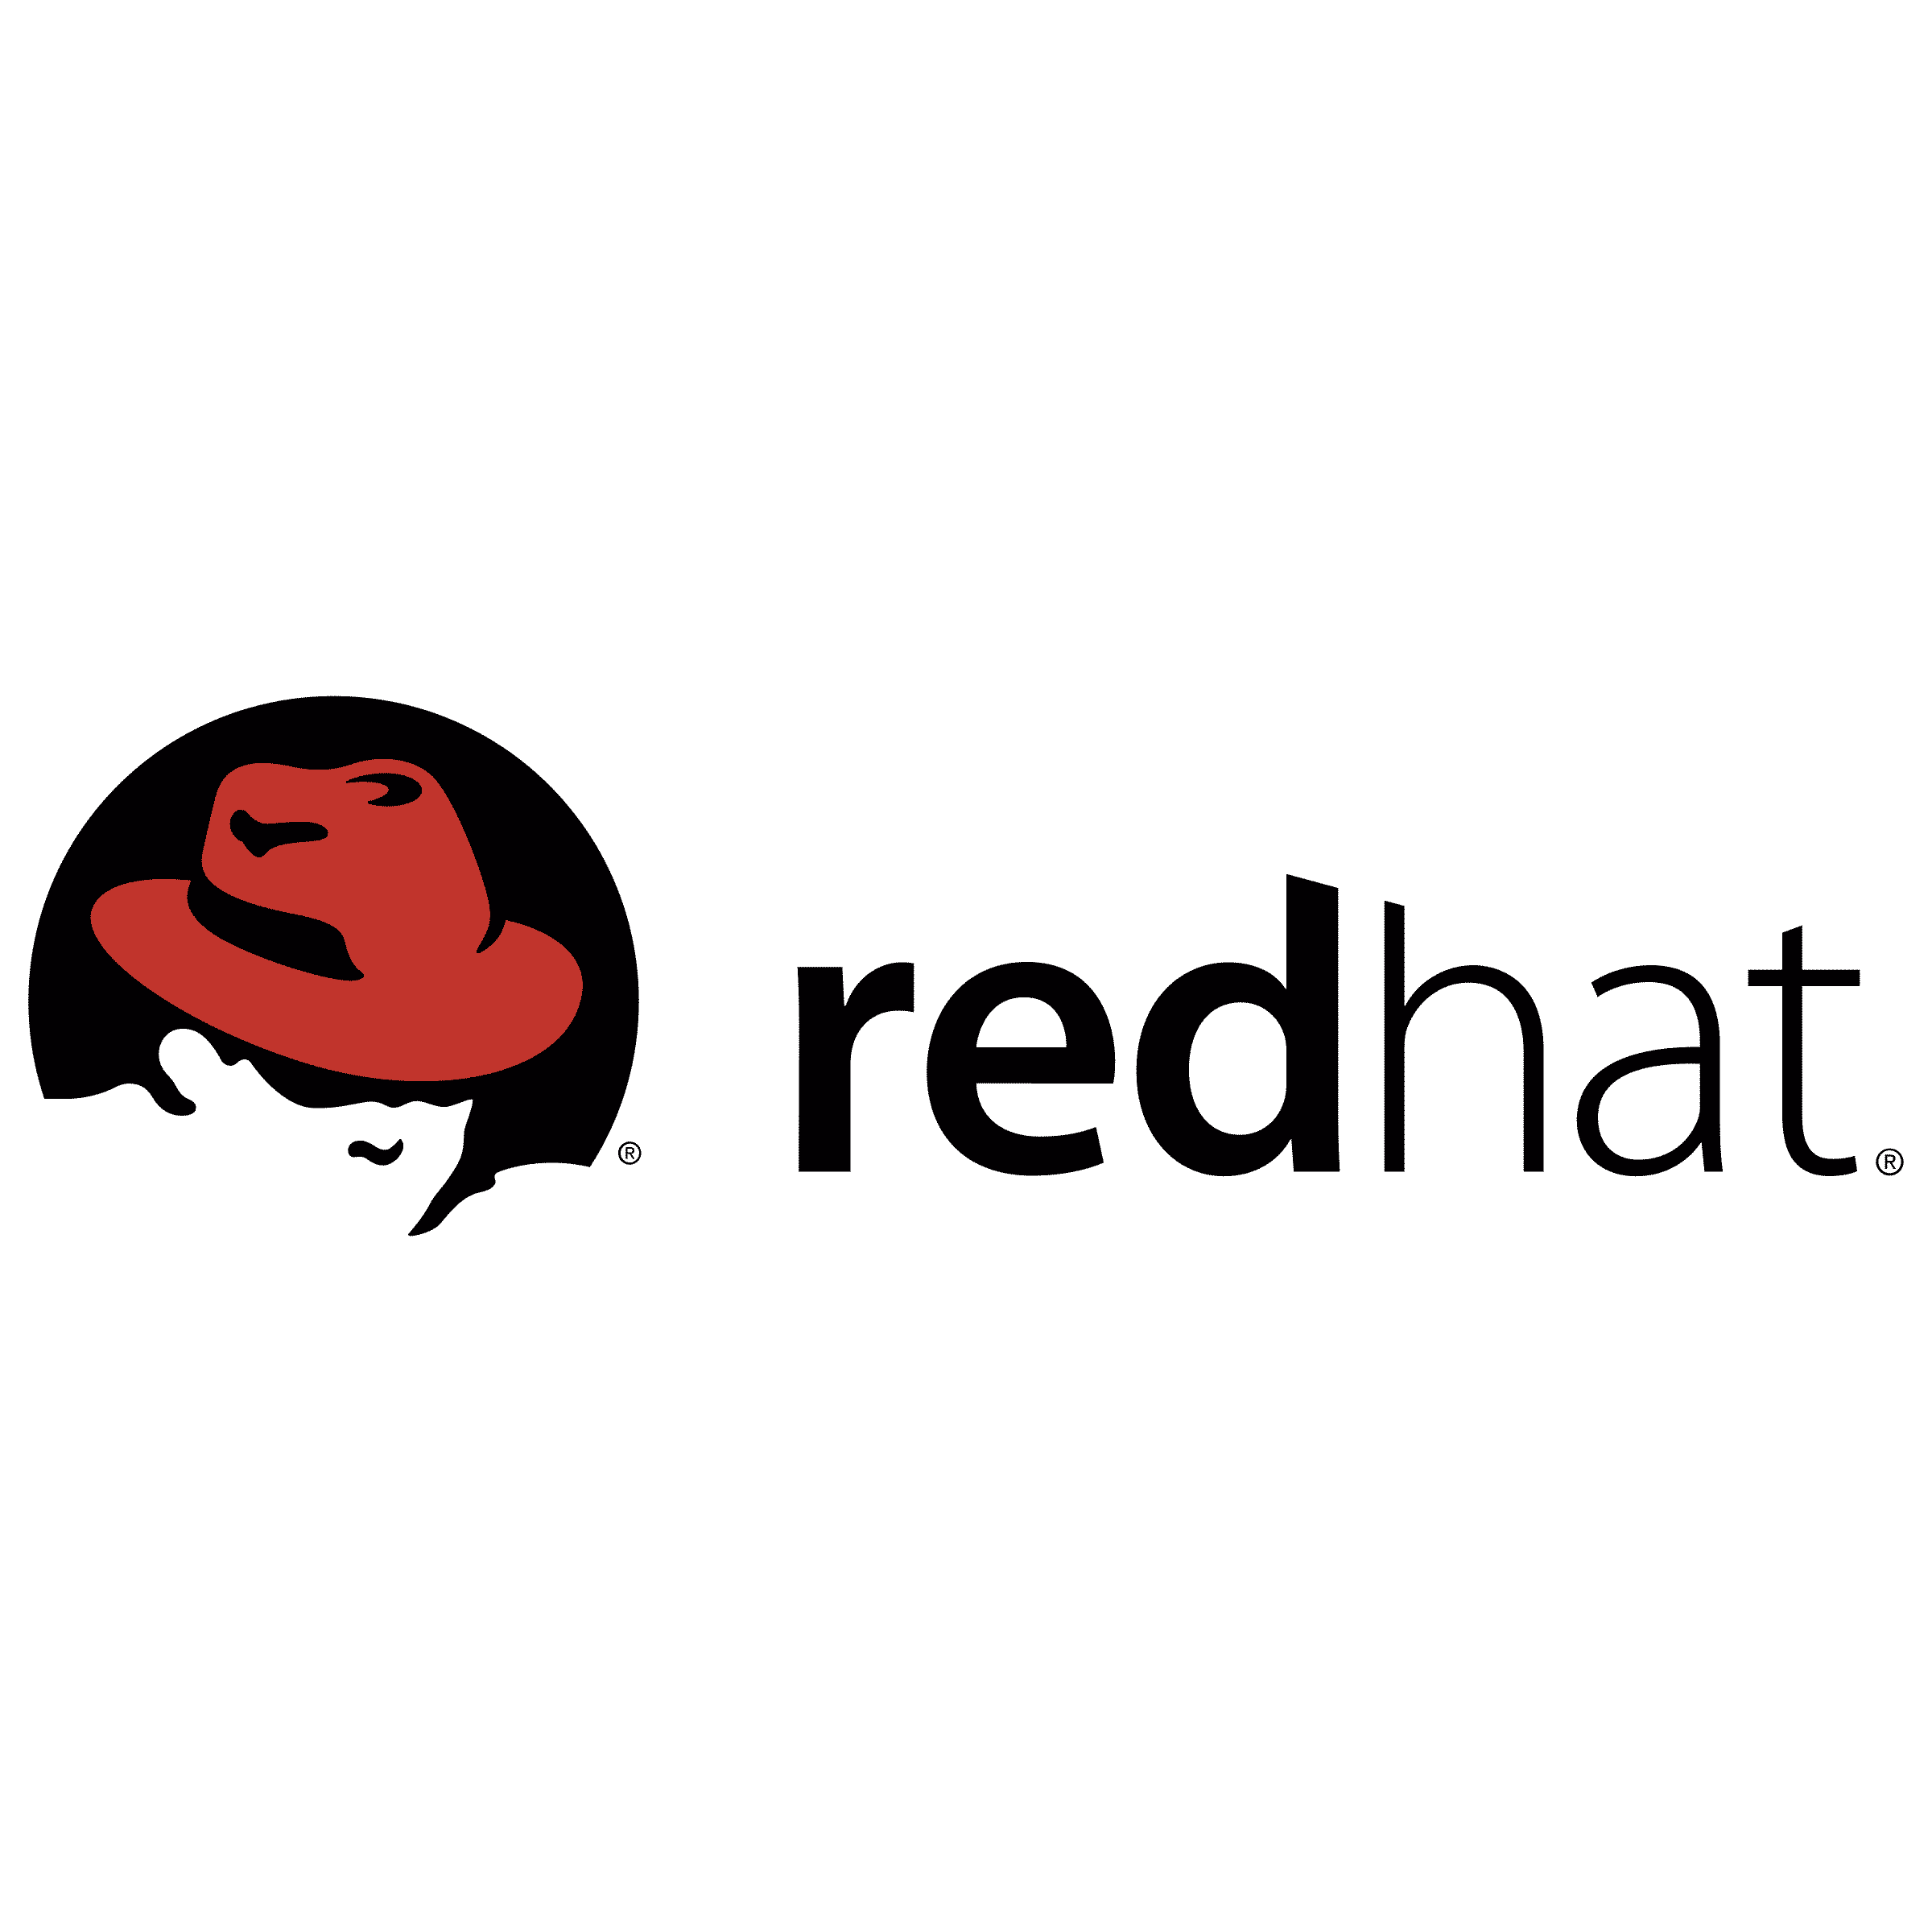 red-hat-2-logo-png-transparent